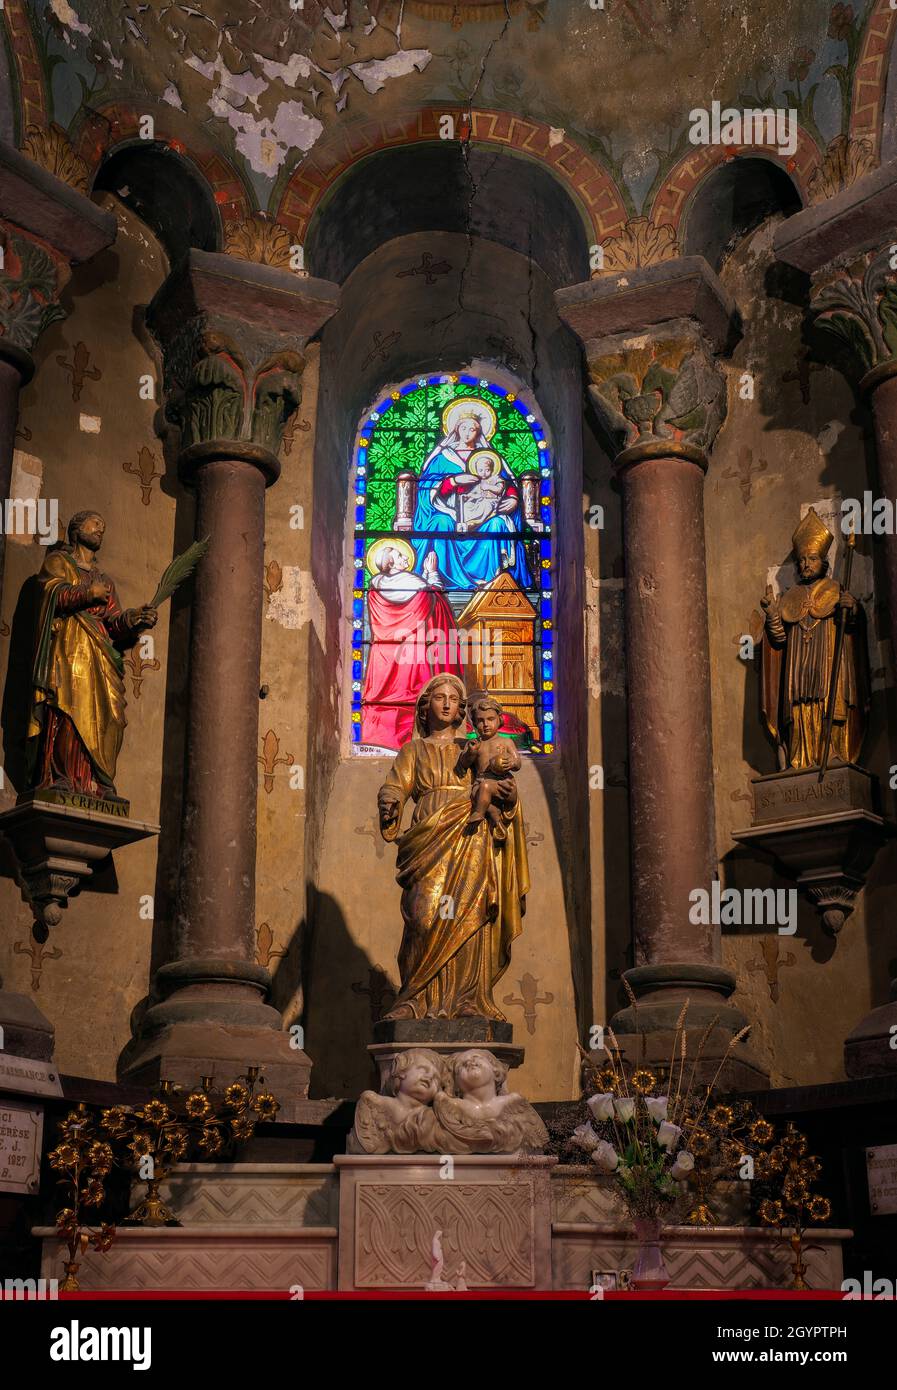 Capilla de la Virgen María, iglesia de Saint-Étienne de Maringues, Maringues, Auvernia, Francia. Foto de stock